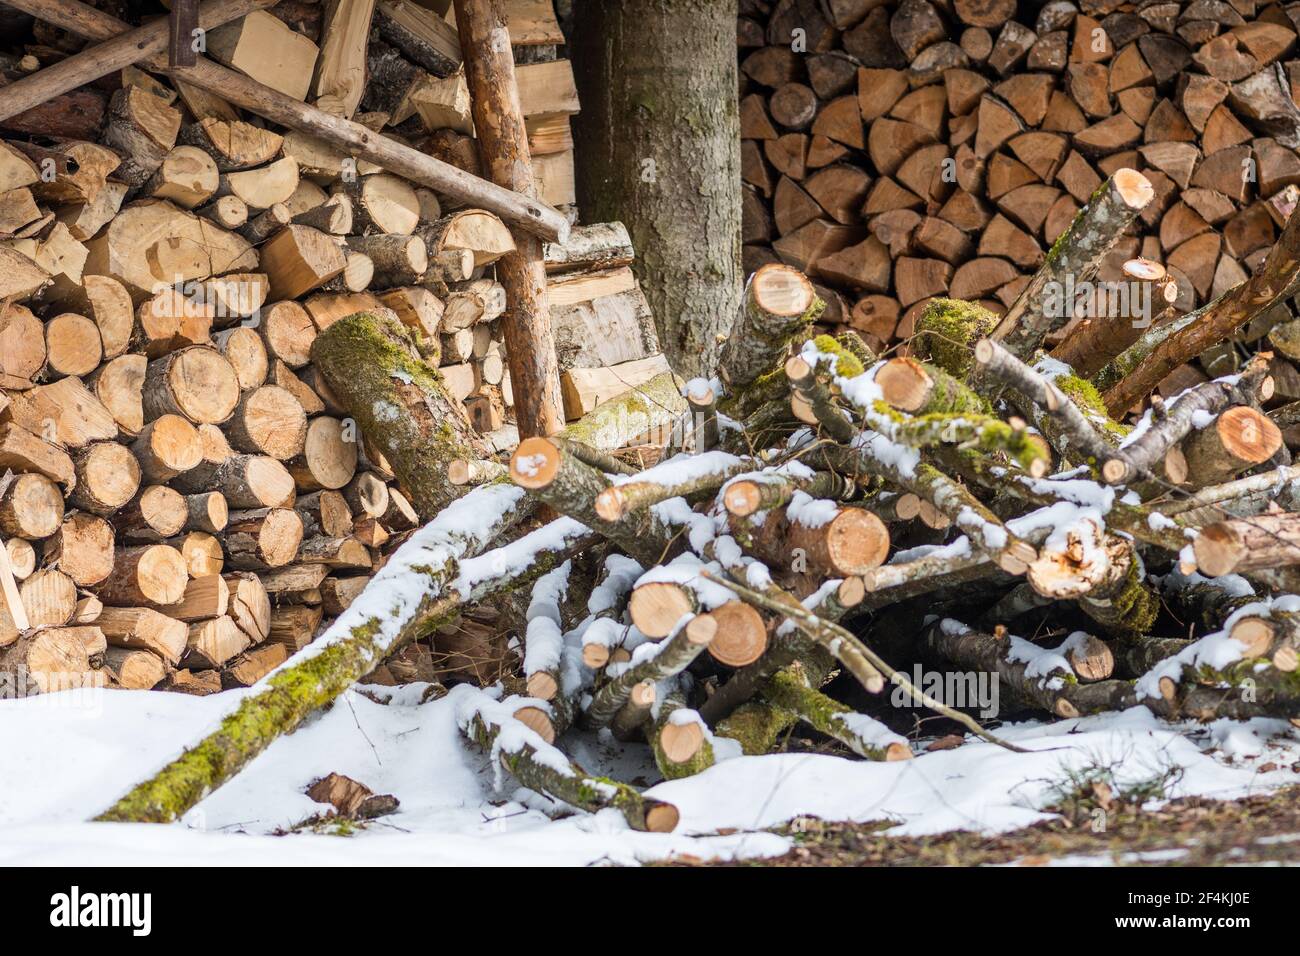 Pile ou pile composée de blocs, morceaux ou billes de bois en hiver ou au printemps avec de la neige. Gerbage de bois pour le séchage et le stockage Banque D'Images